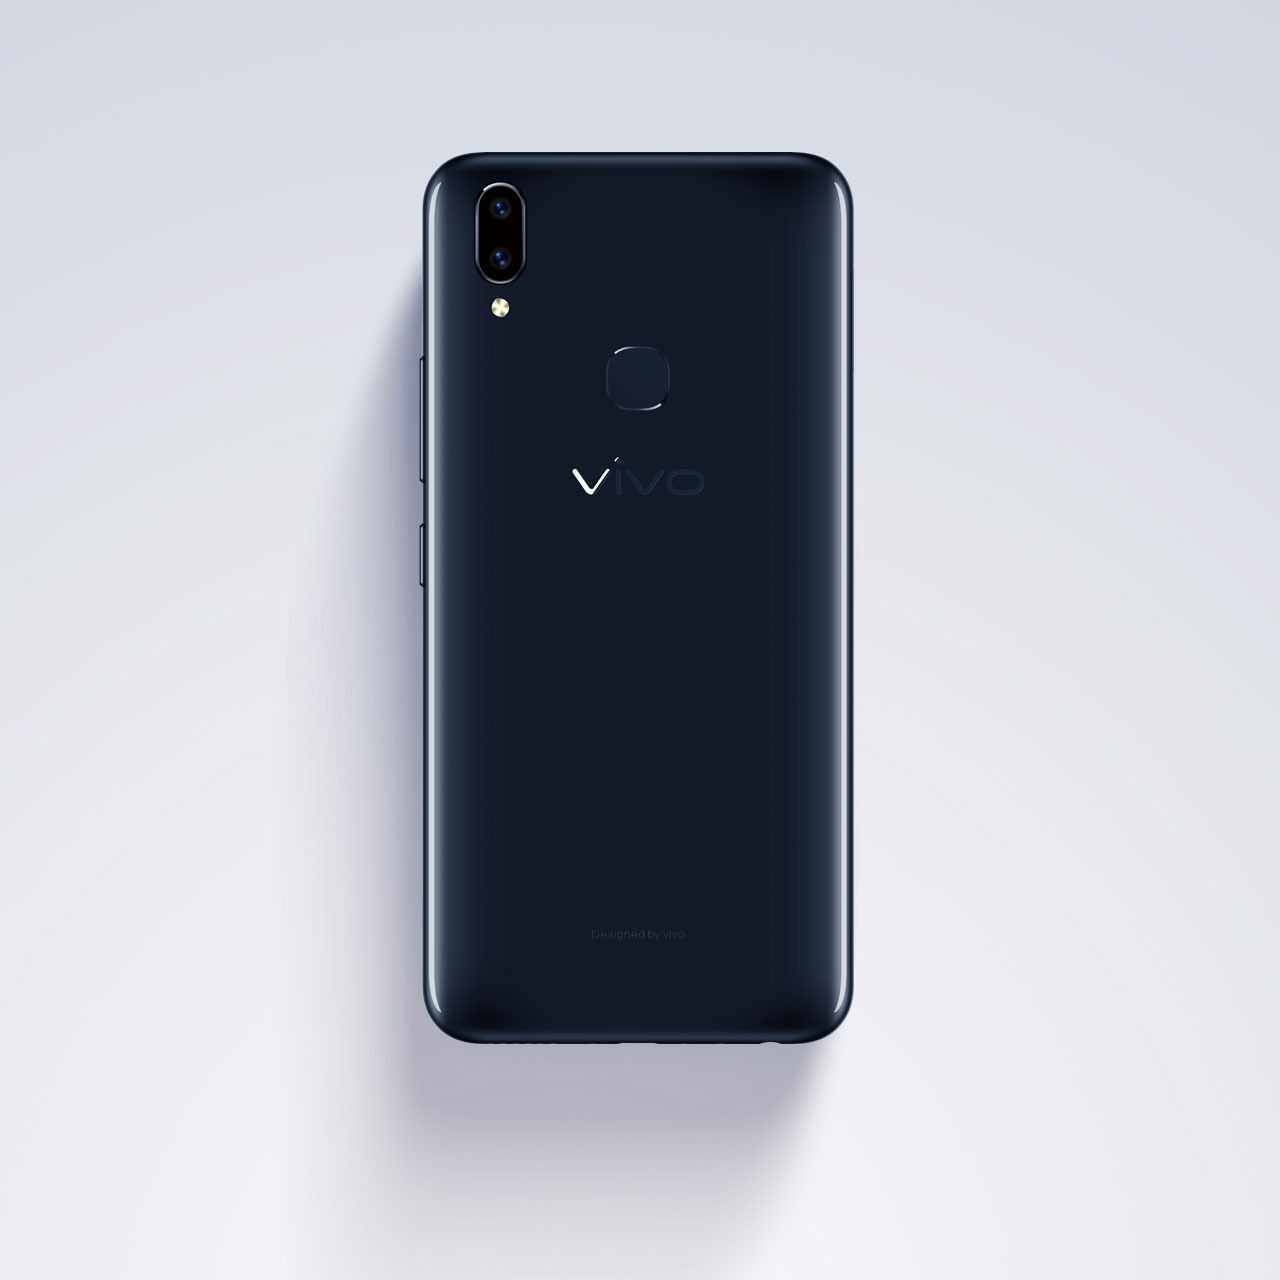 Vivo презентовала безрамочный смартфон Vivo V9 в России‍